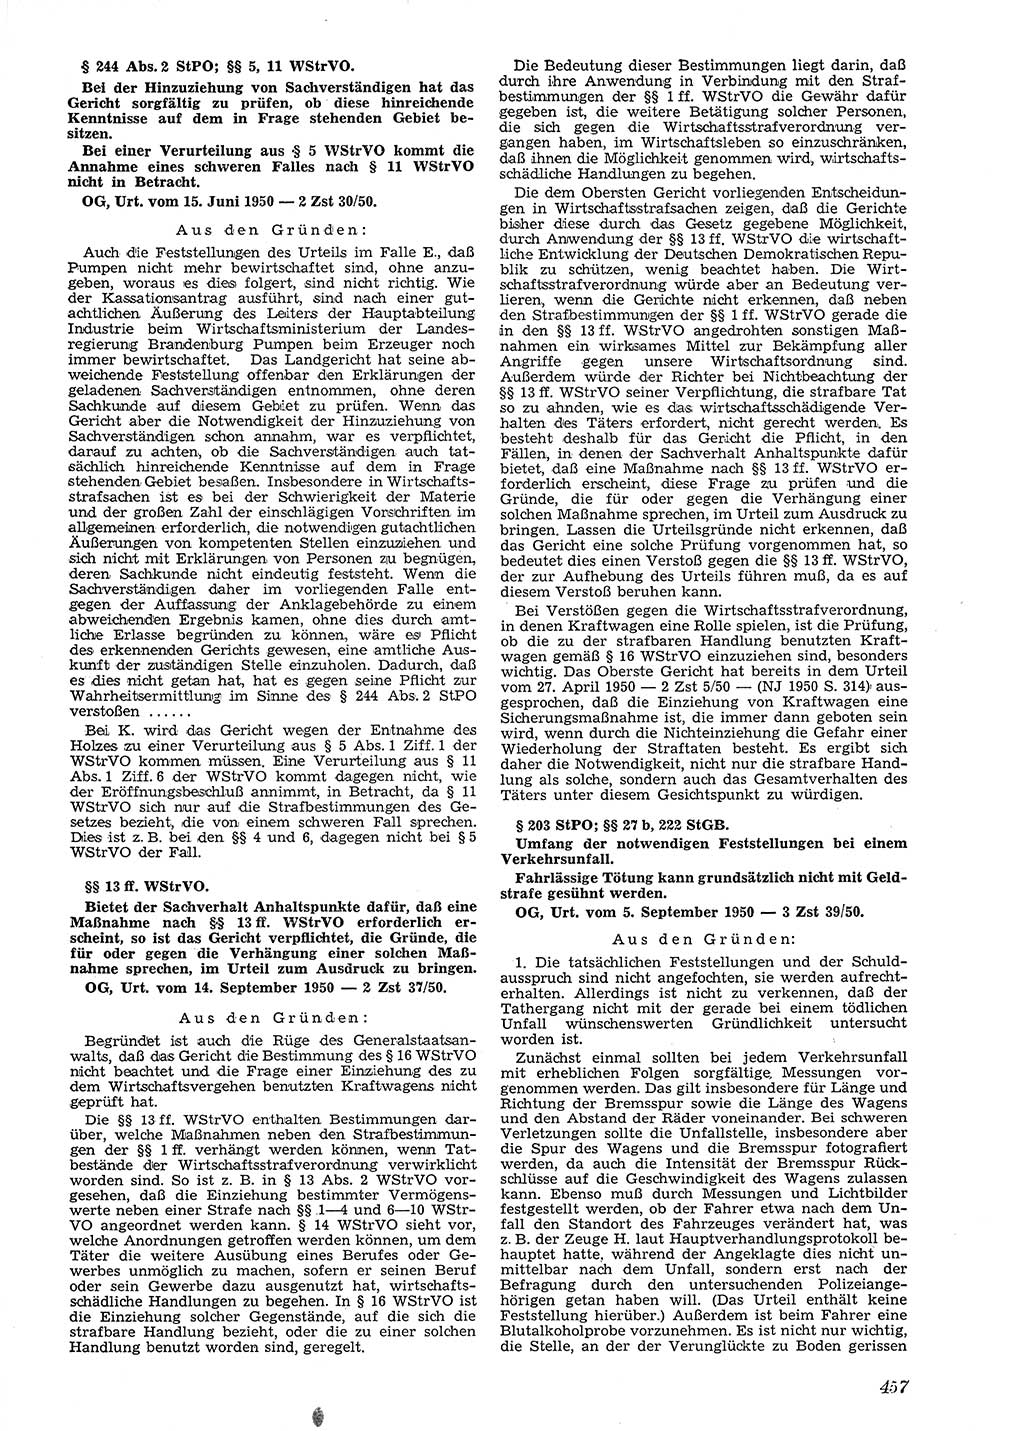 Neue Justiz (NJ), Zeitschrift für Recht und Rechtswissenschaft [Deutsche Demokratische Republik (DDR)], 4. Jahrgang 1950, Seite 457 (NJ DDR 1950, S. 457)